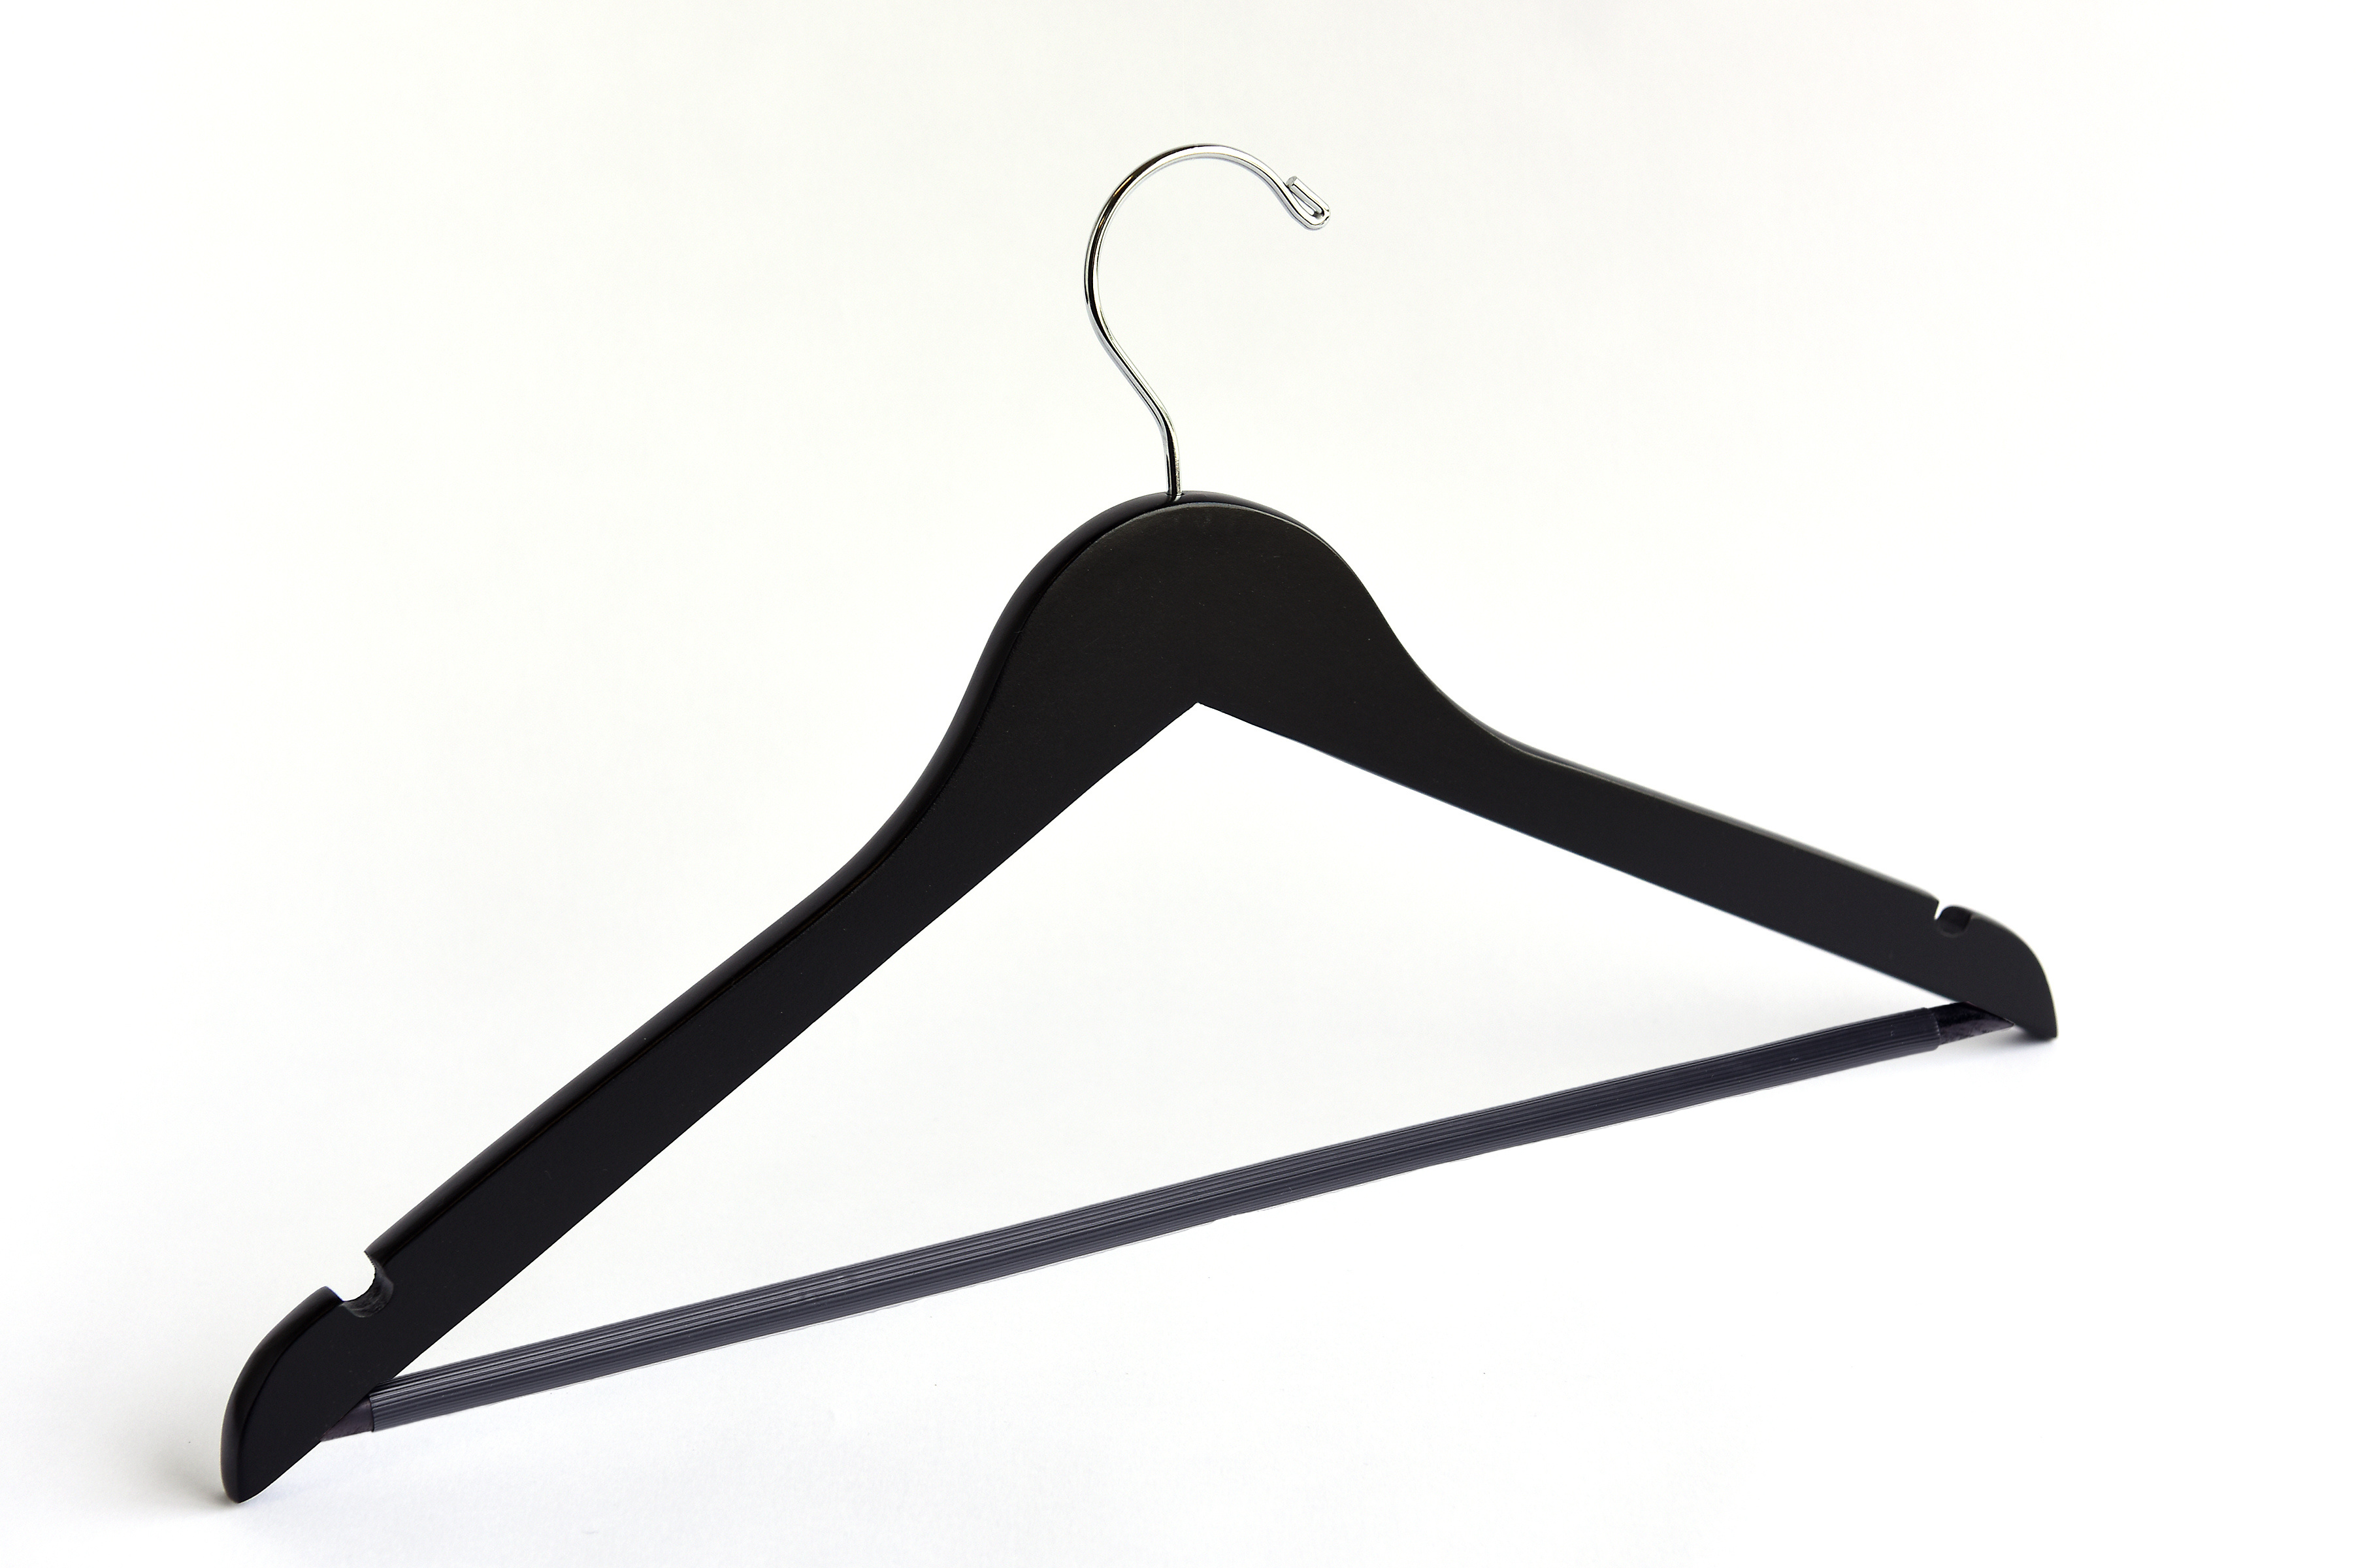 Matte Black Wooden Flat Suit Hanger with a silver hook, shoulder notches, and pant bar for custom bridal hanger designers #hook-color_silver-hook